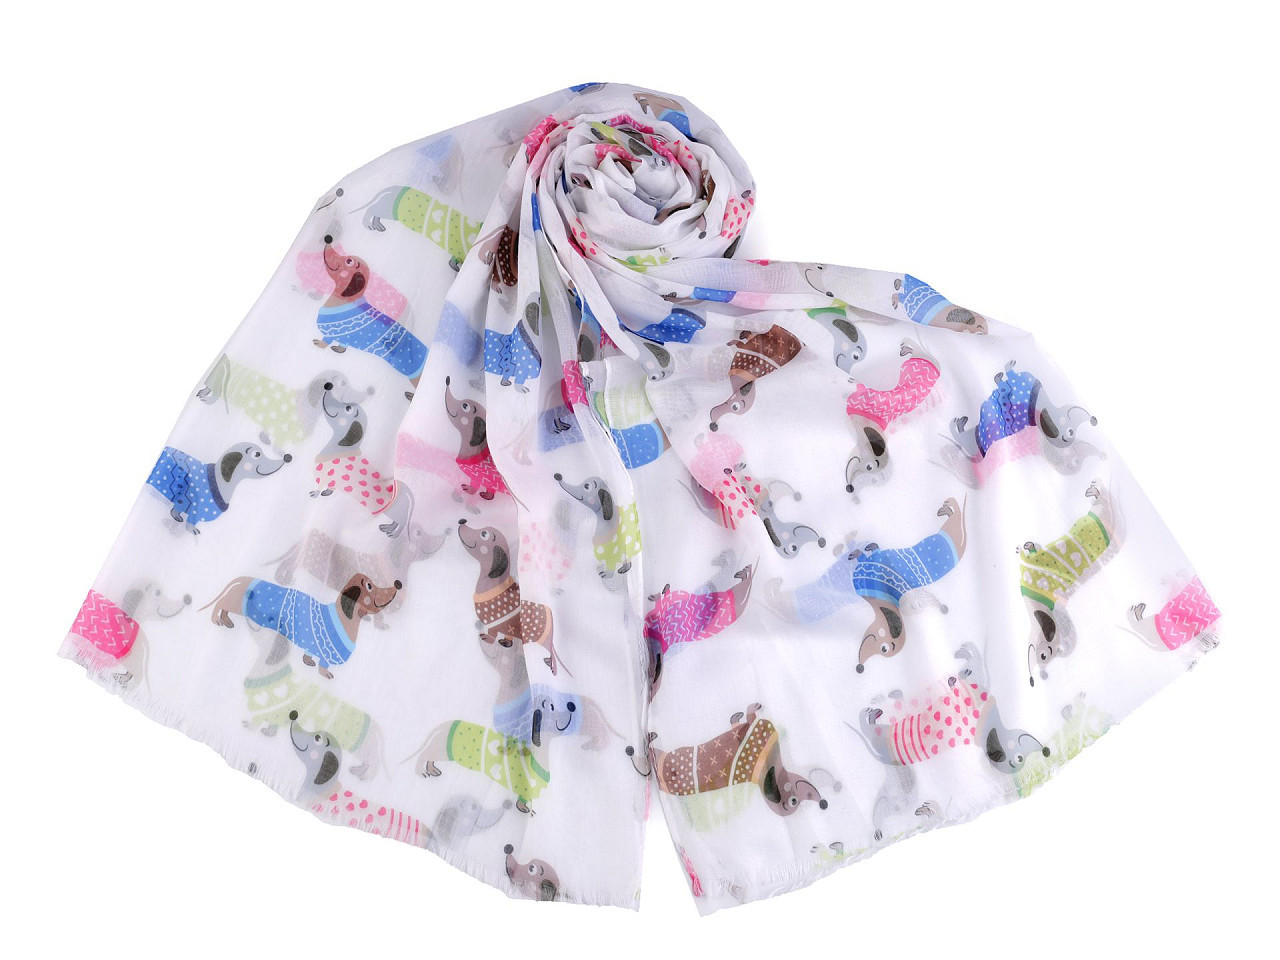 Letní šátek / šála jezevčík, buldoček 75x180 cm, barva 4 bílá